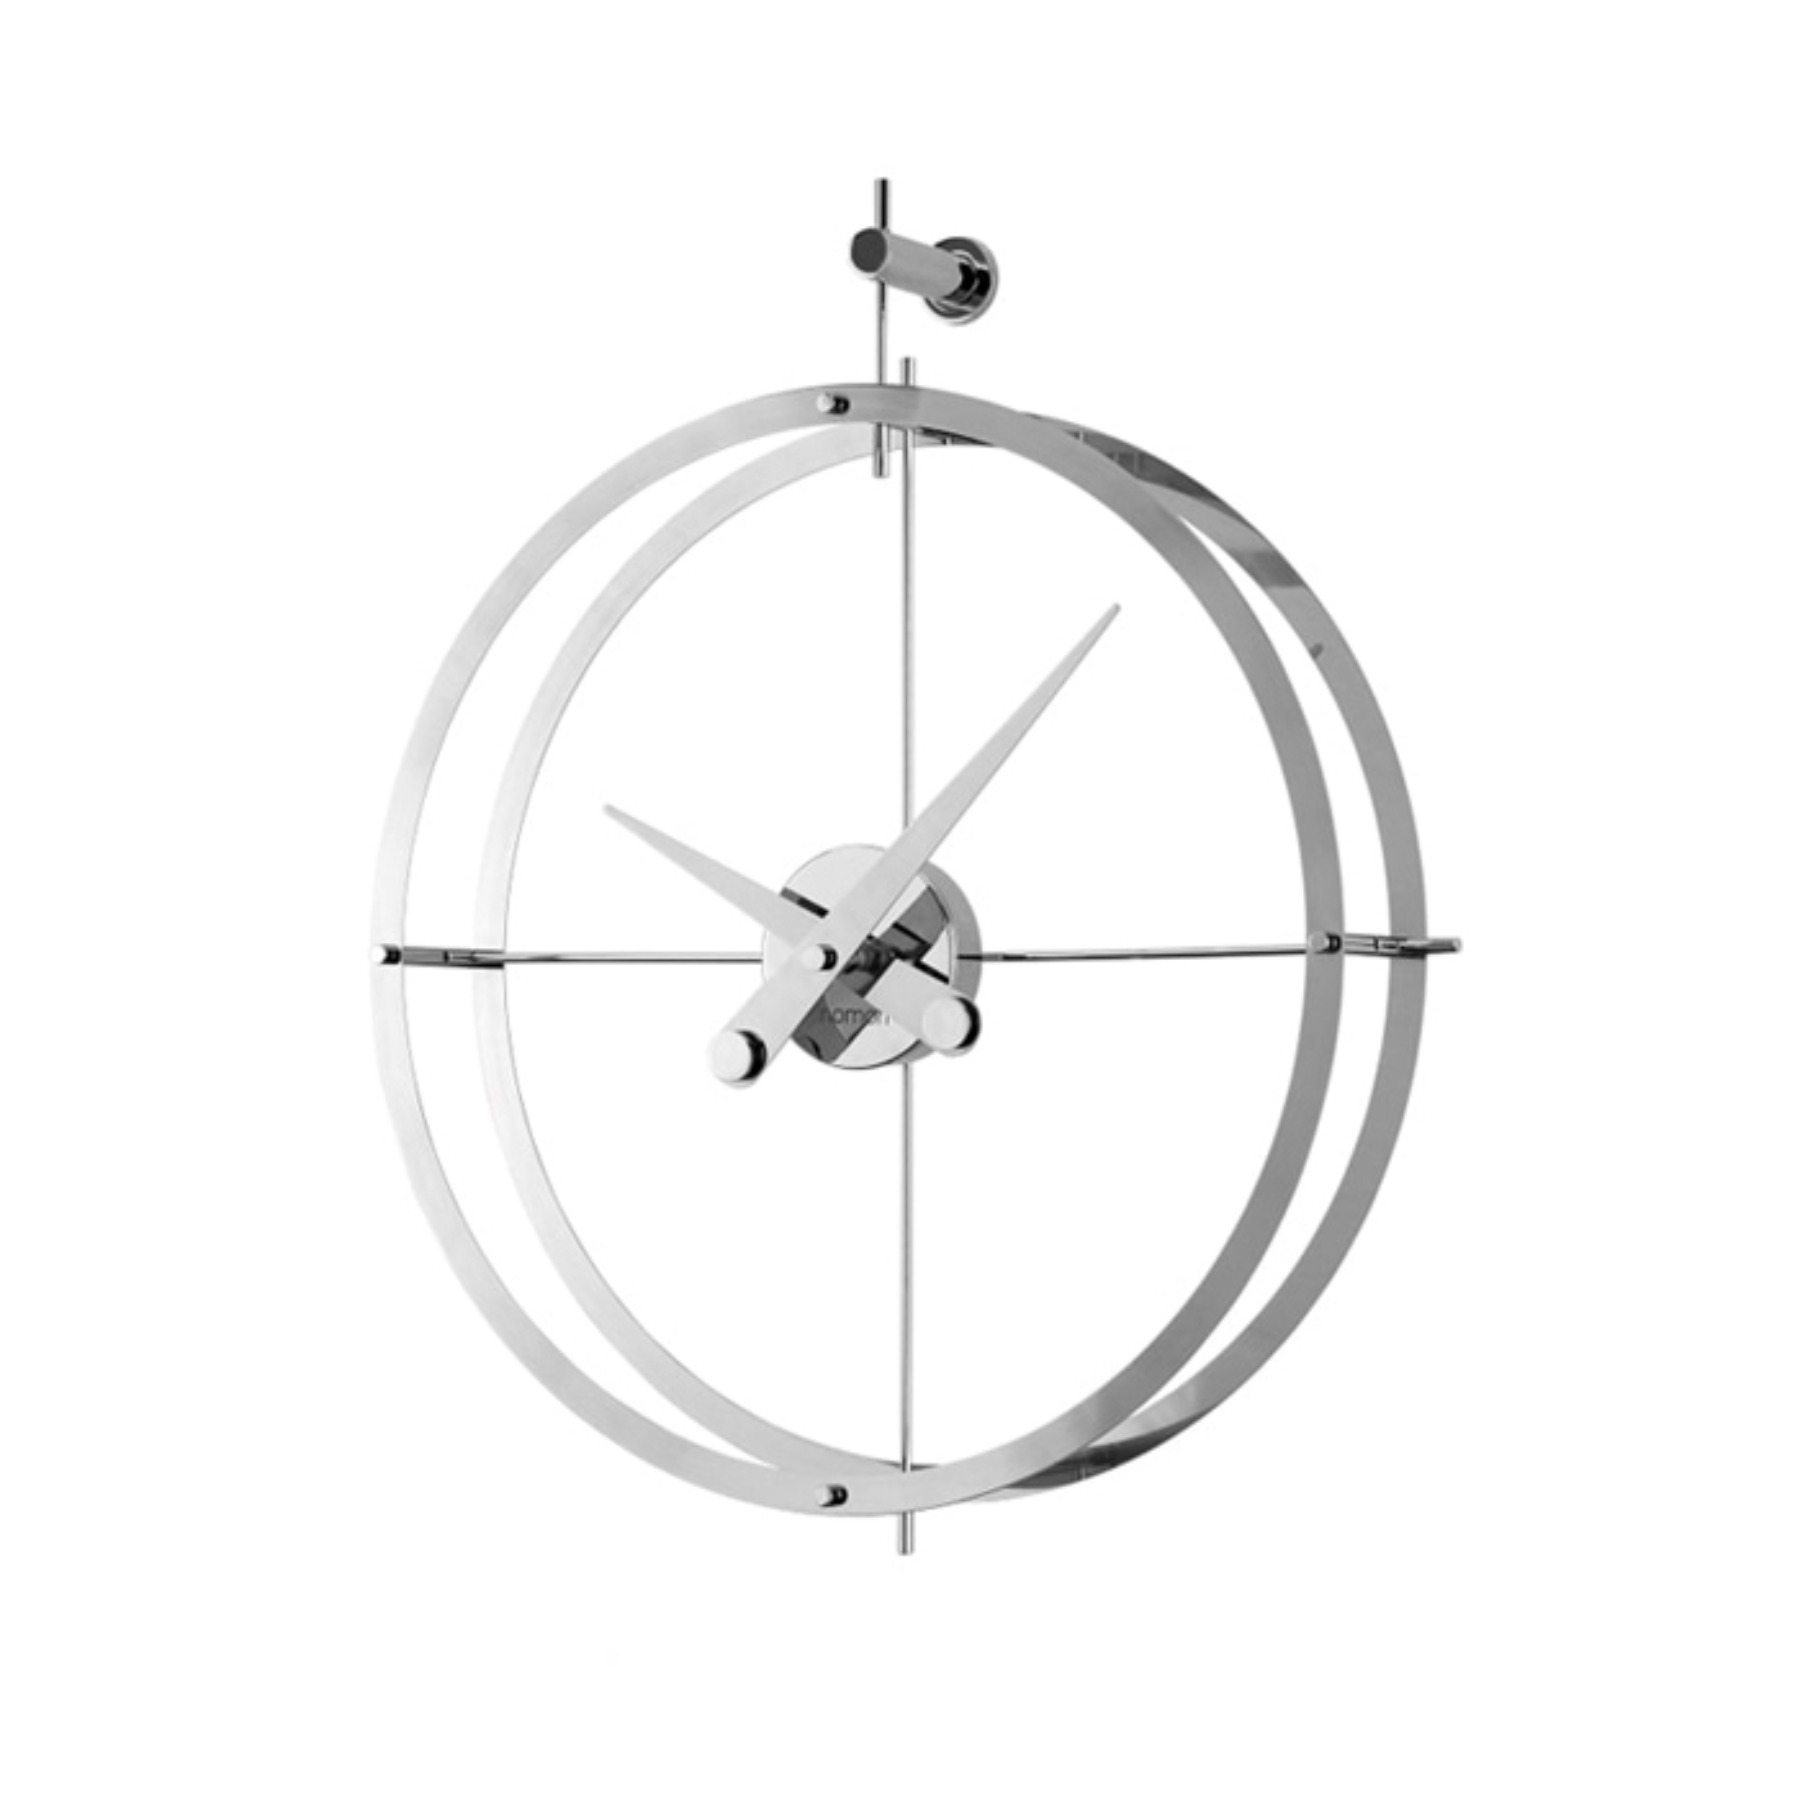 Dos Puntos (Silver) Wall Clock 도스푼토스 벽시계